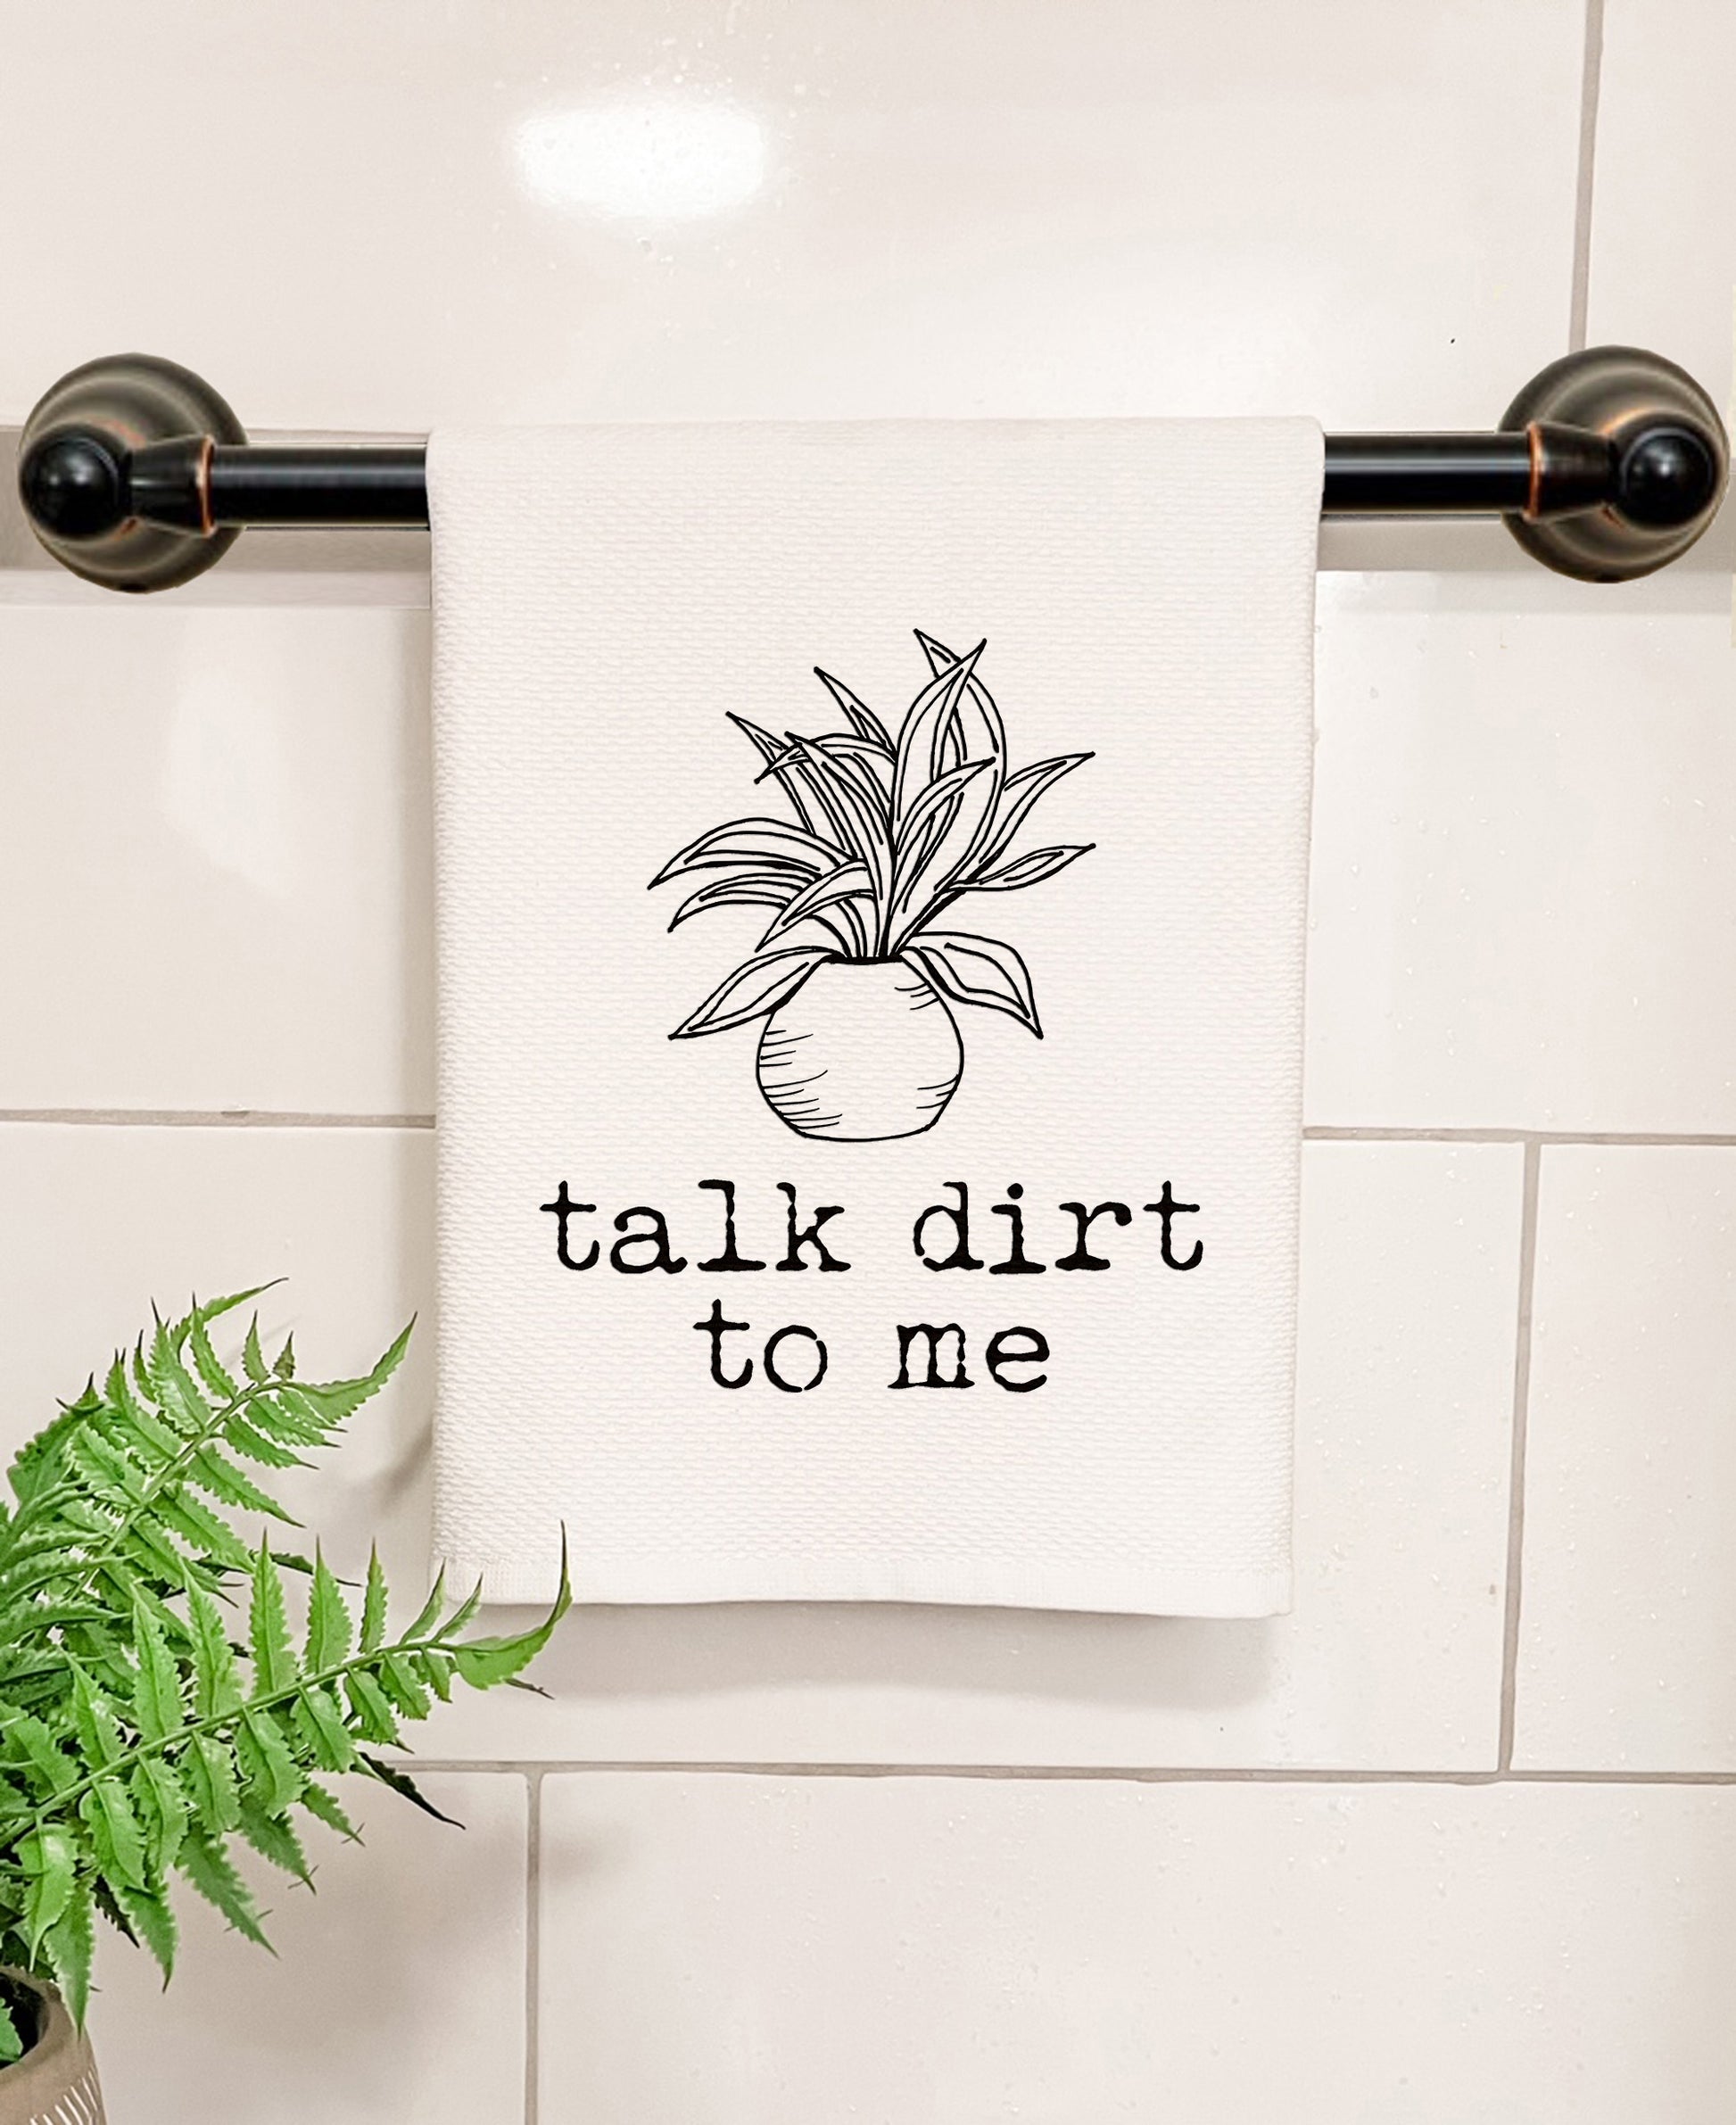 Towel Talk